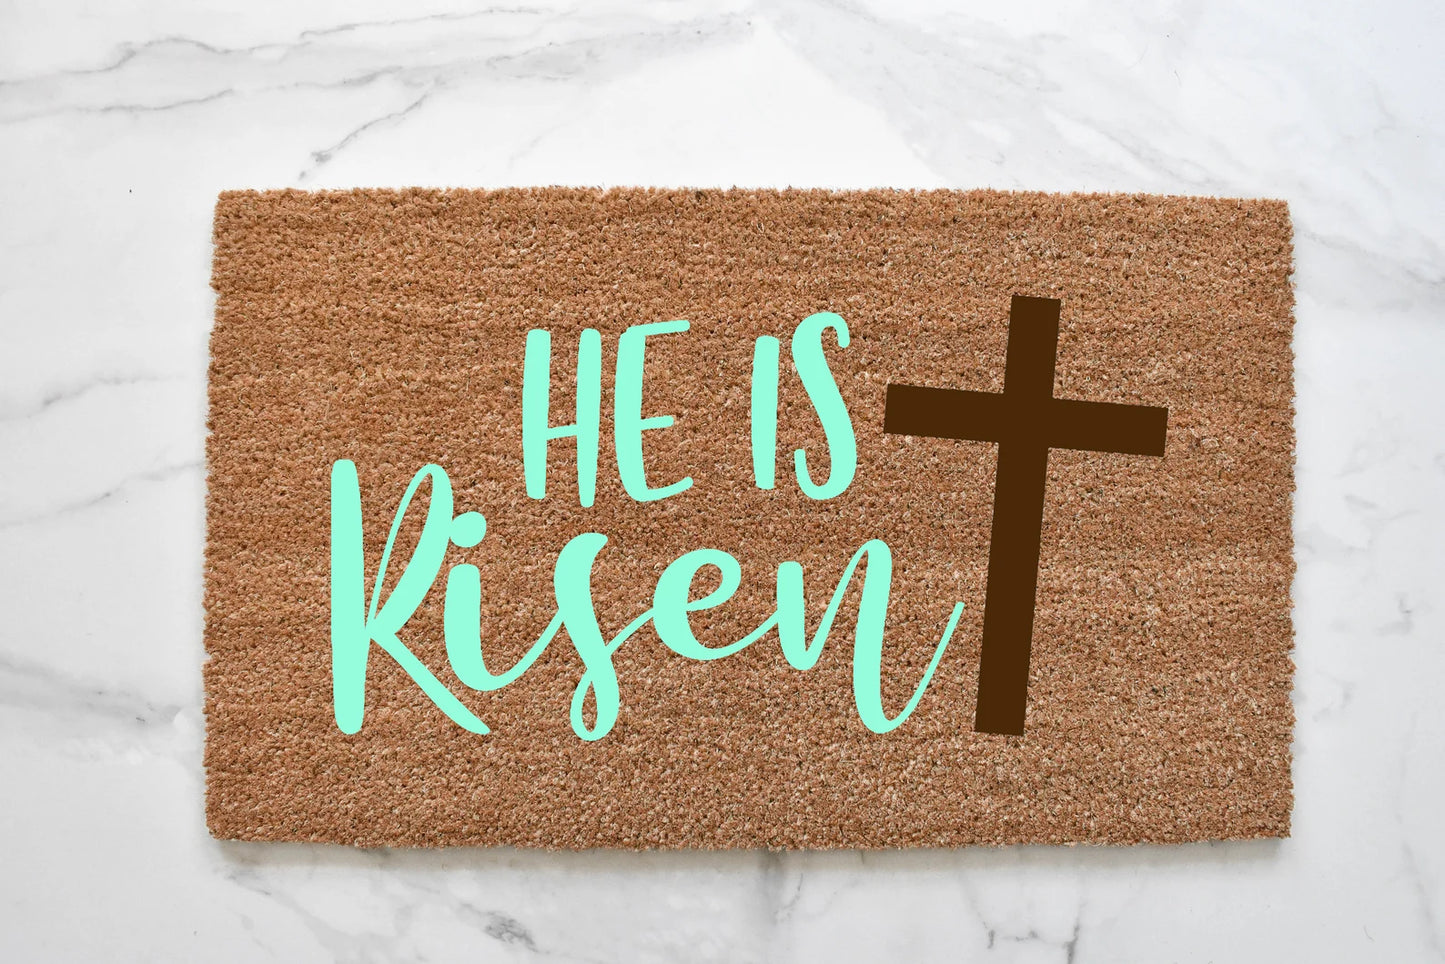 He Is Risen + Cross Doormat